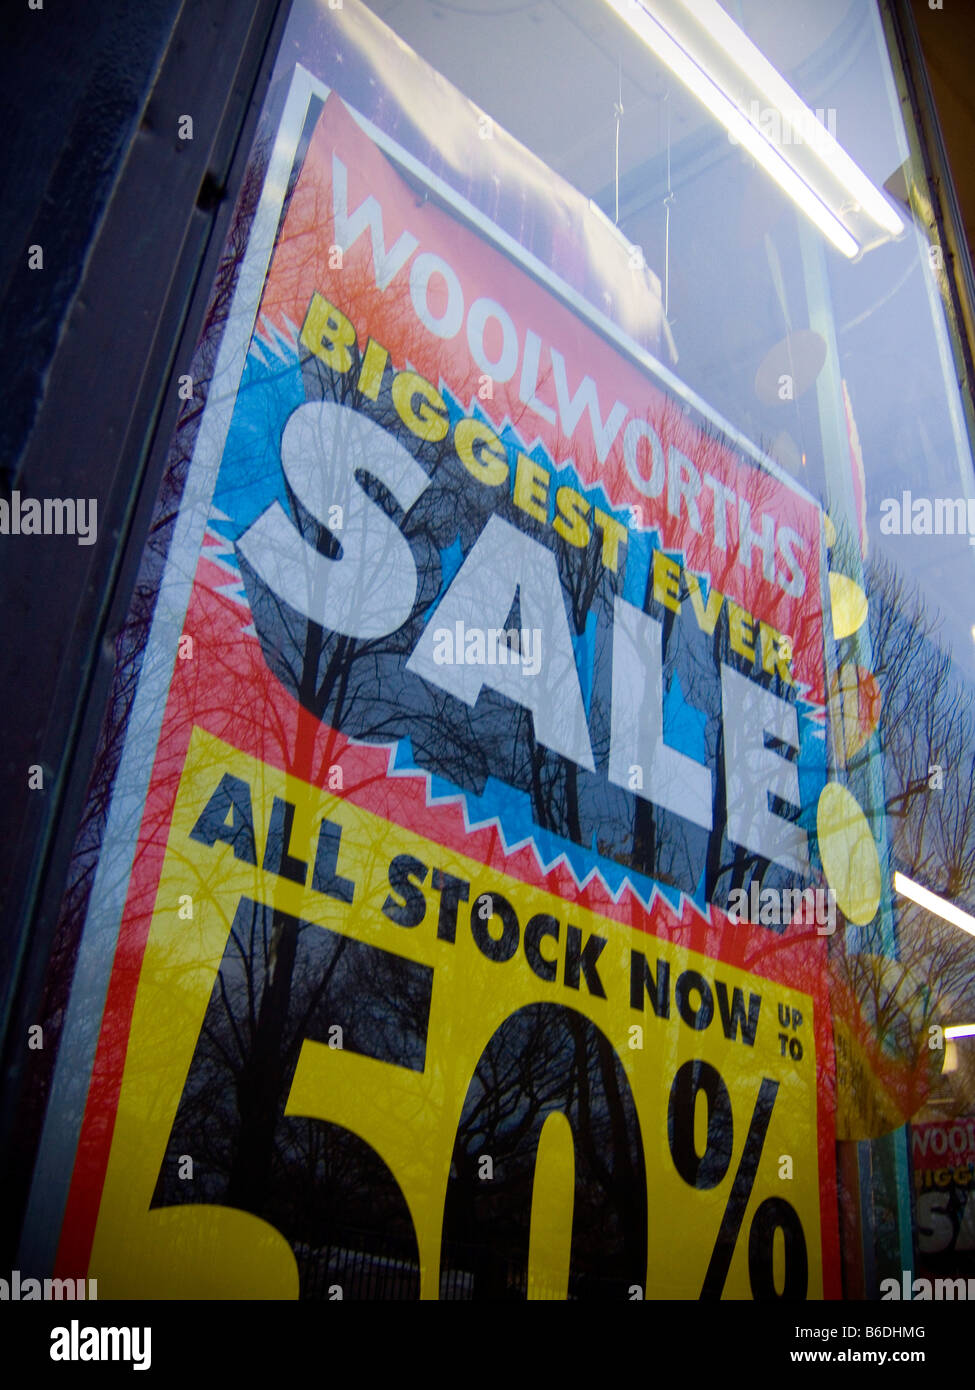 La fermeture la vente à Woolworths, durant la crise du crédit / récession de 2008/2009. Banque D'Images